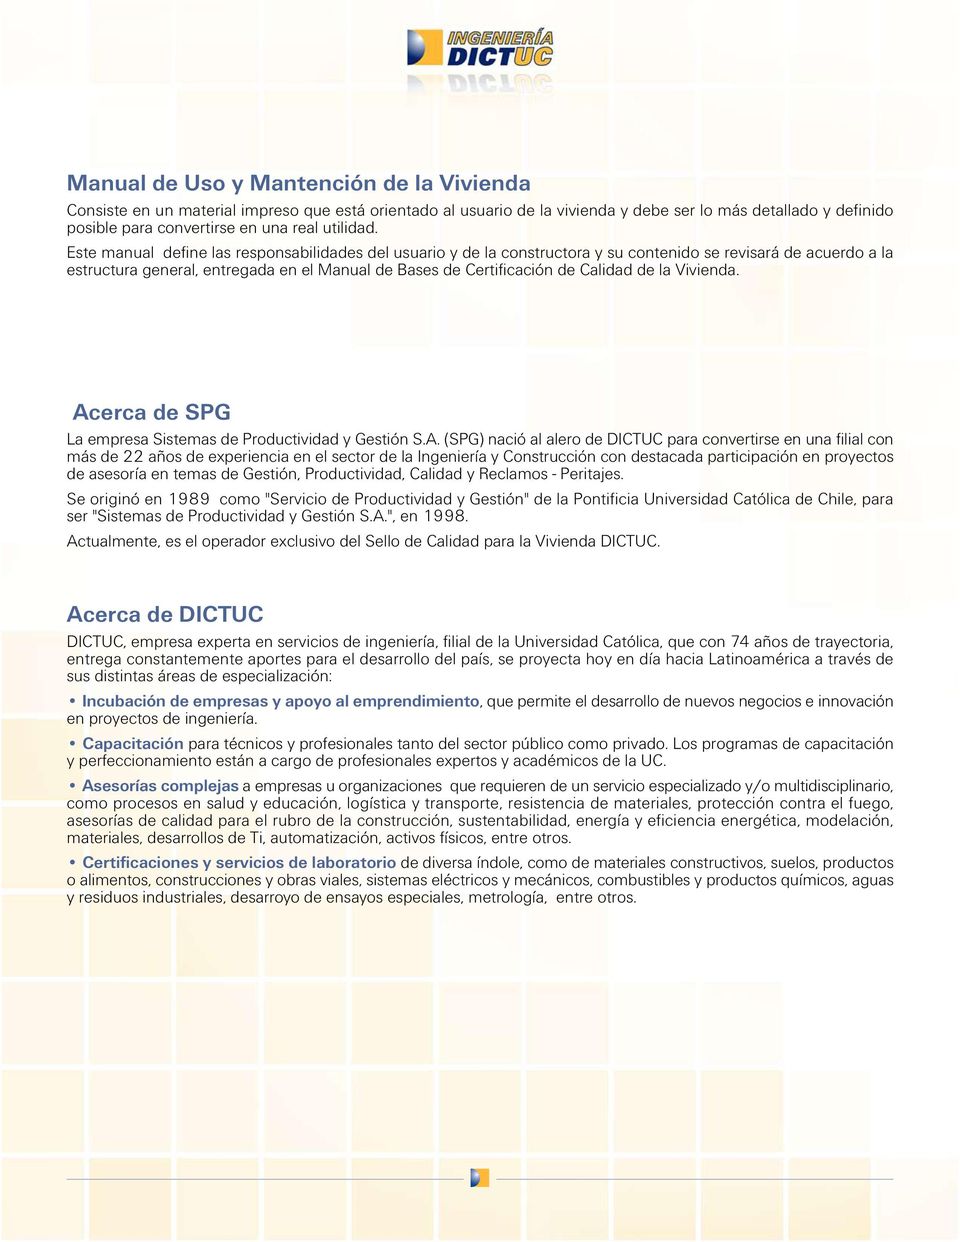 Este manual define las responsabilidades del usuario y de la constructora y su contenido se revisará de acuerdo a la estructura general, entregada en el Manual de Bases de Certificación de Calidad de